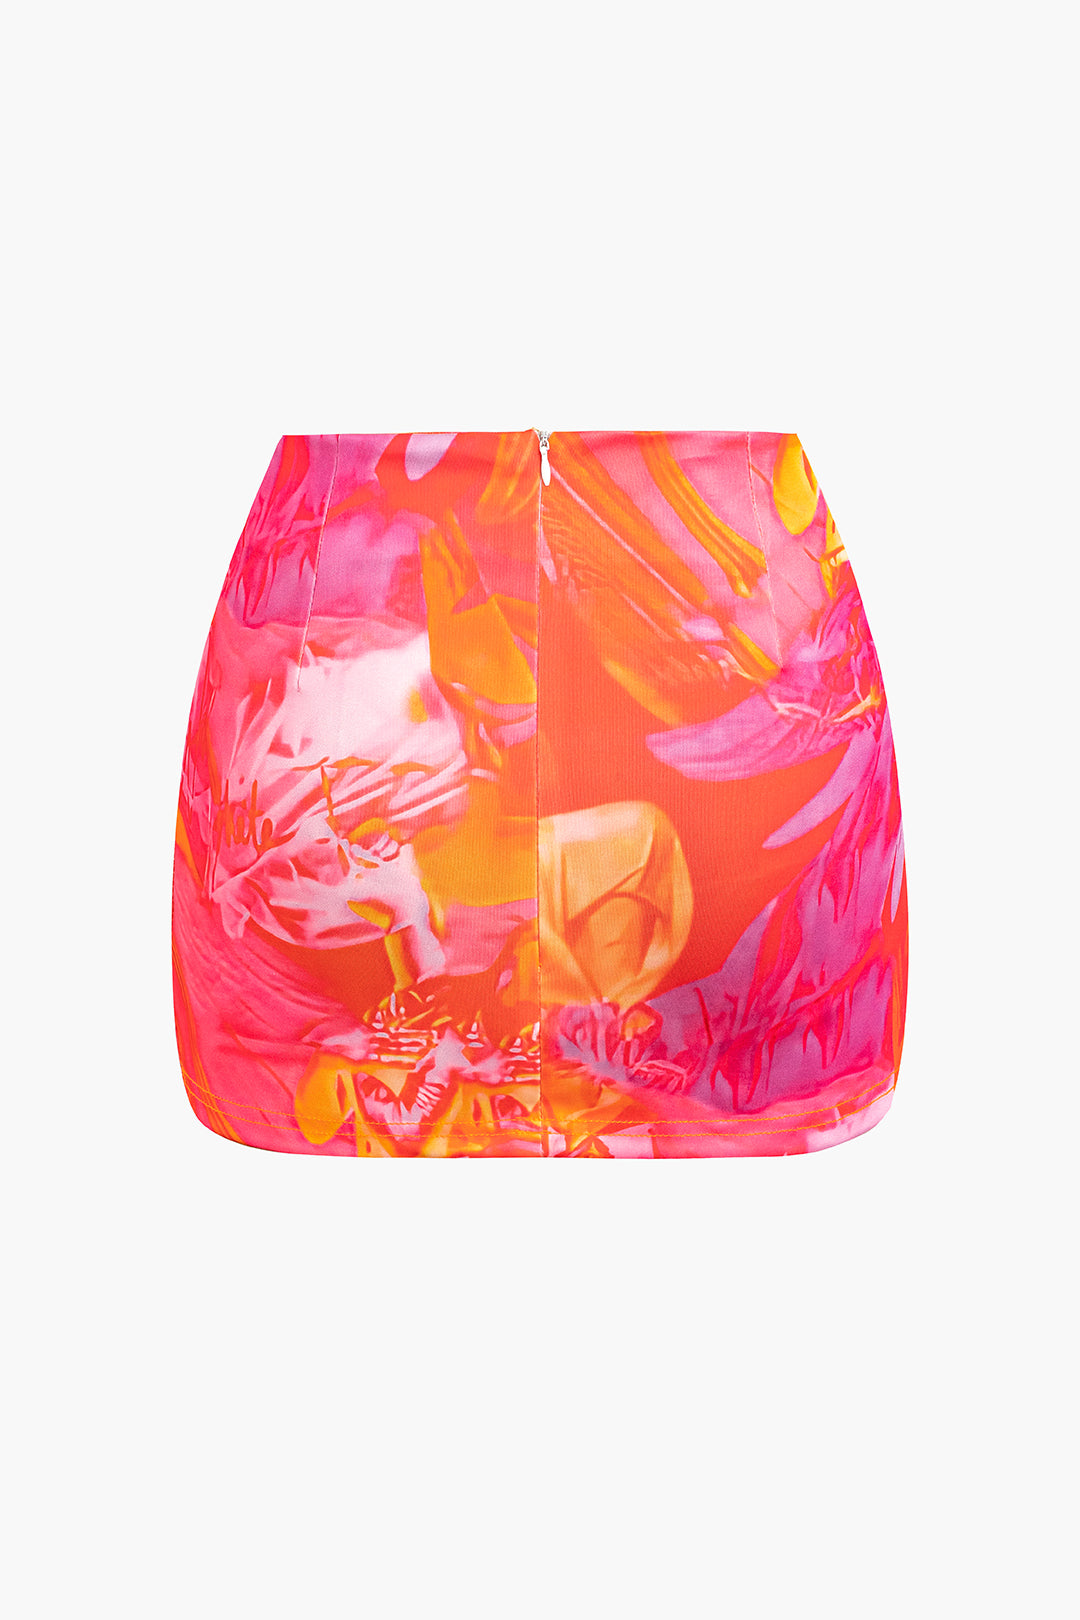 Abstract Print Corset Top And Mini Skirt Set